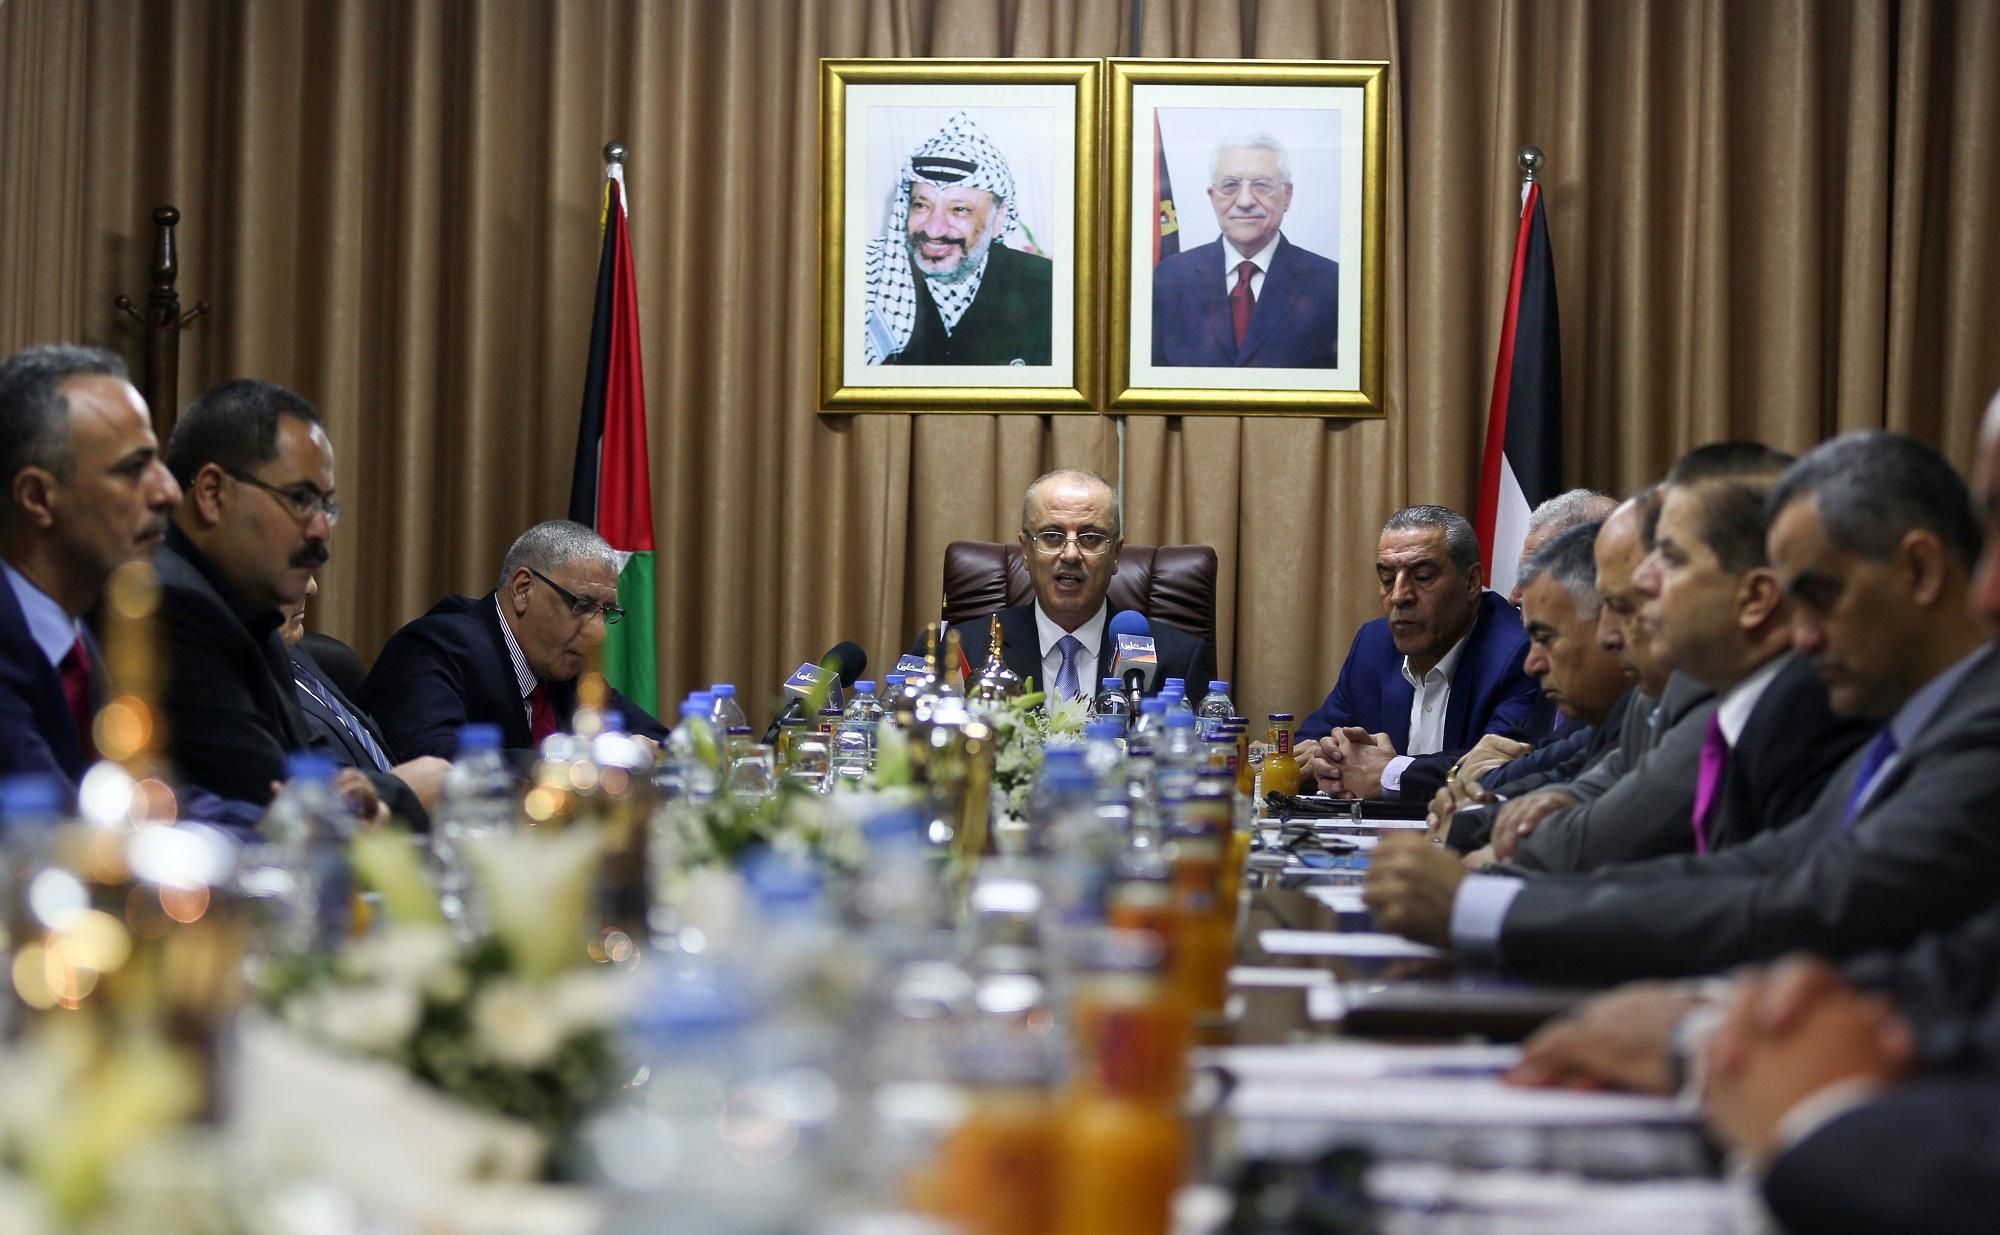 El primer ministro palestino, Rami Hamdalá, preside la reunión del gobierno en Gaza, la primera vez en tres años, bajo los retratos de Yaser Arafat y de Mahmud Abas. Foto Mohammed Abed (AFP).